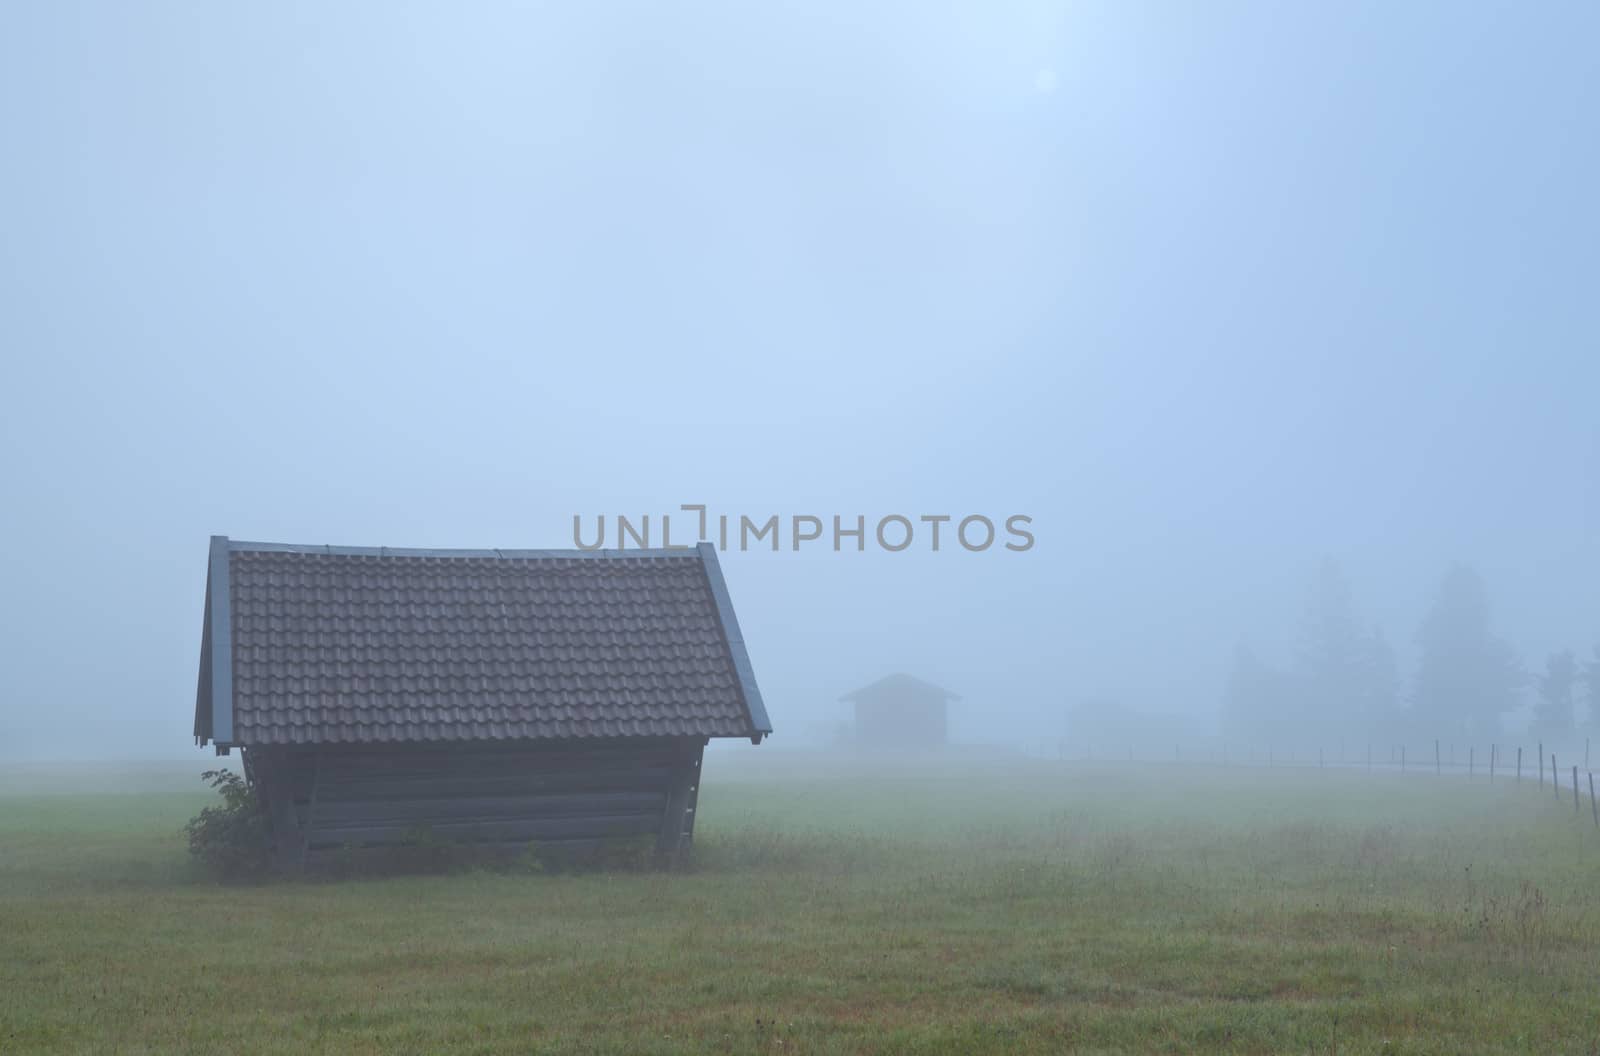 old wooden hut in dense fog on Alpine meadow, Germany